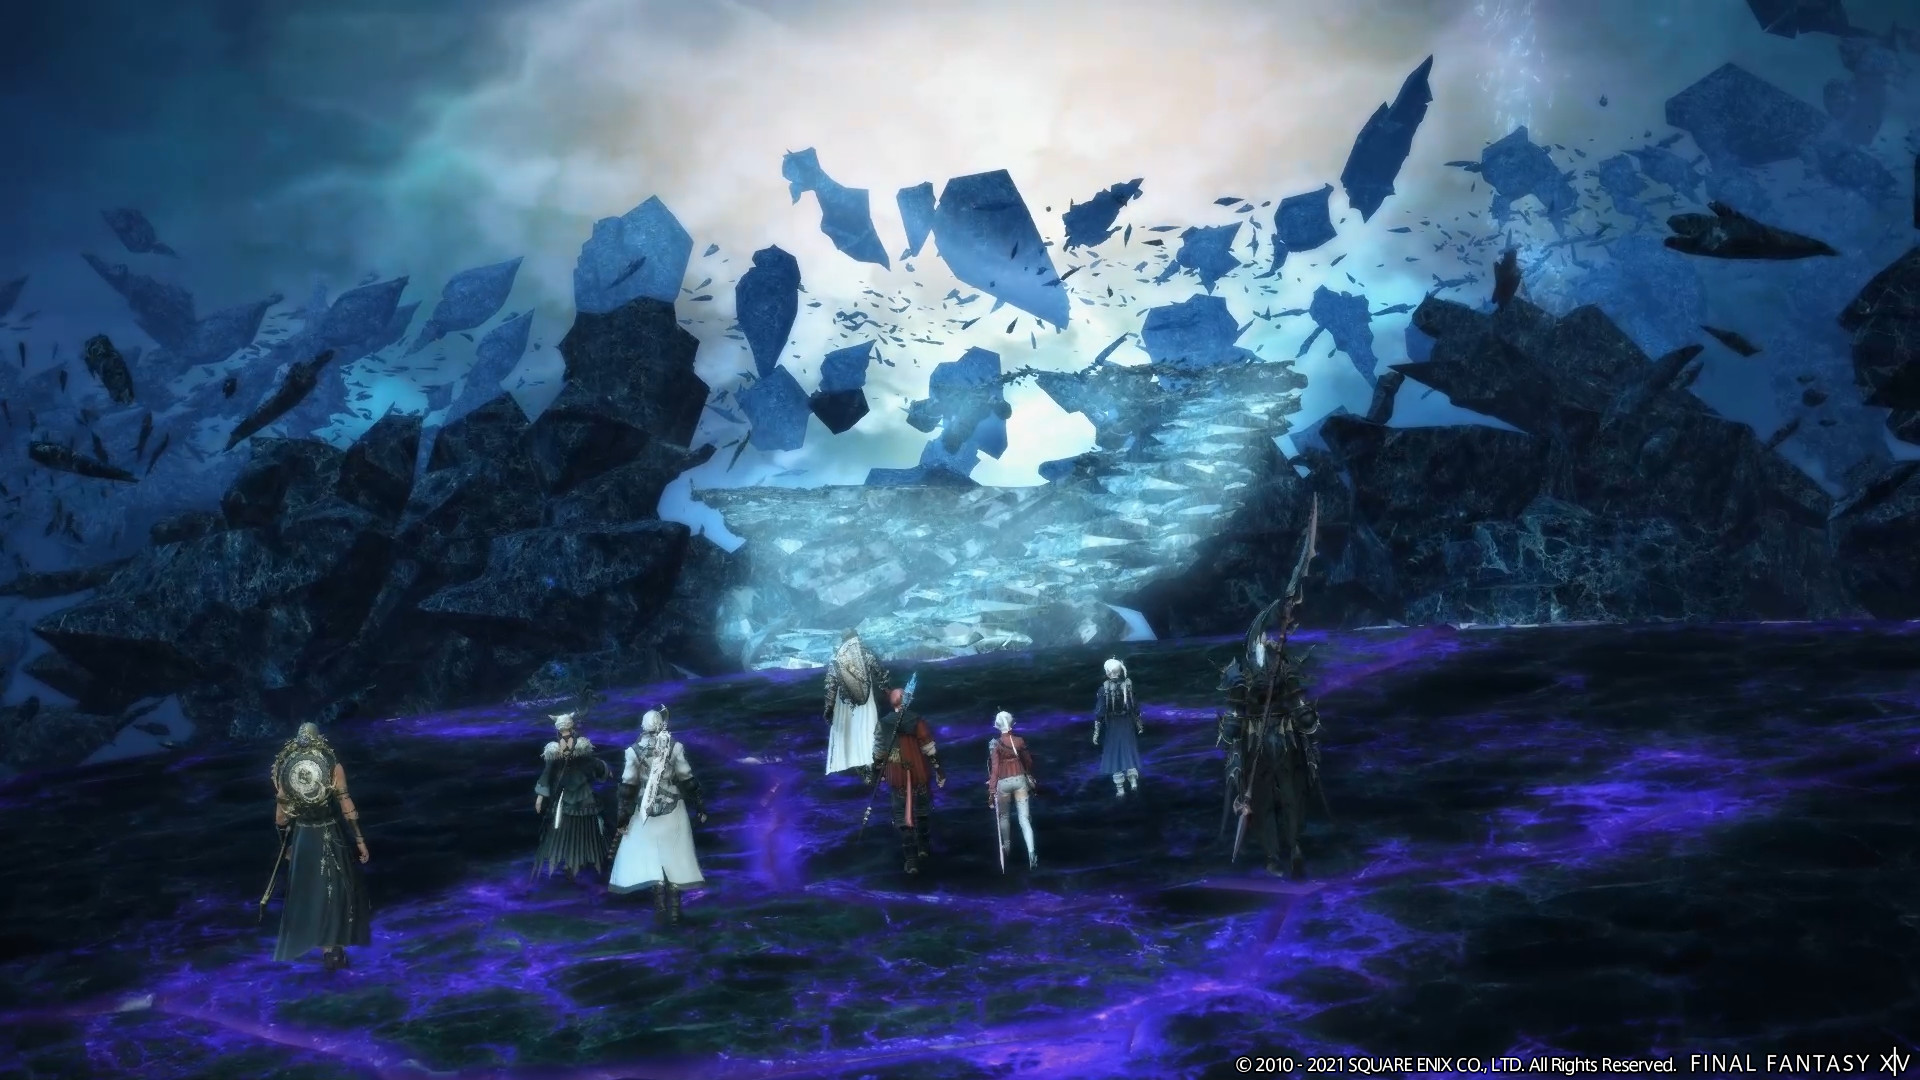 Final Fantasy XIV: Endwalker' Is The Highest Scored Game On